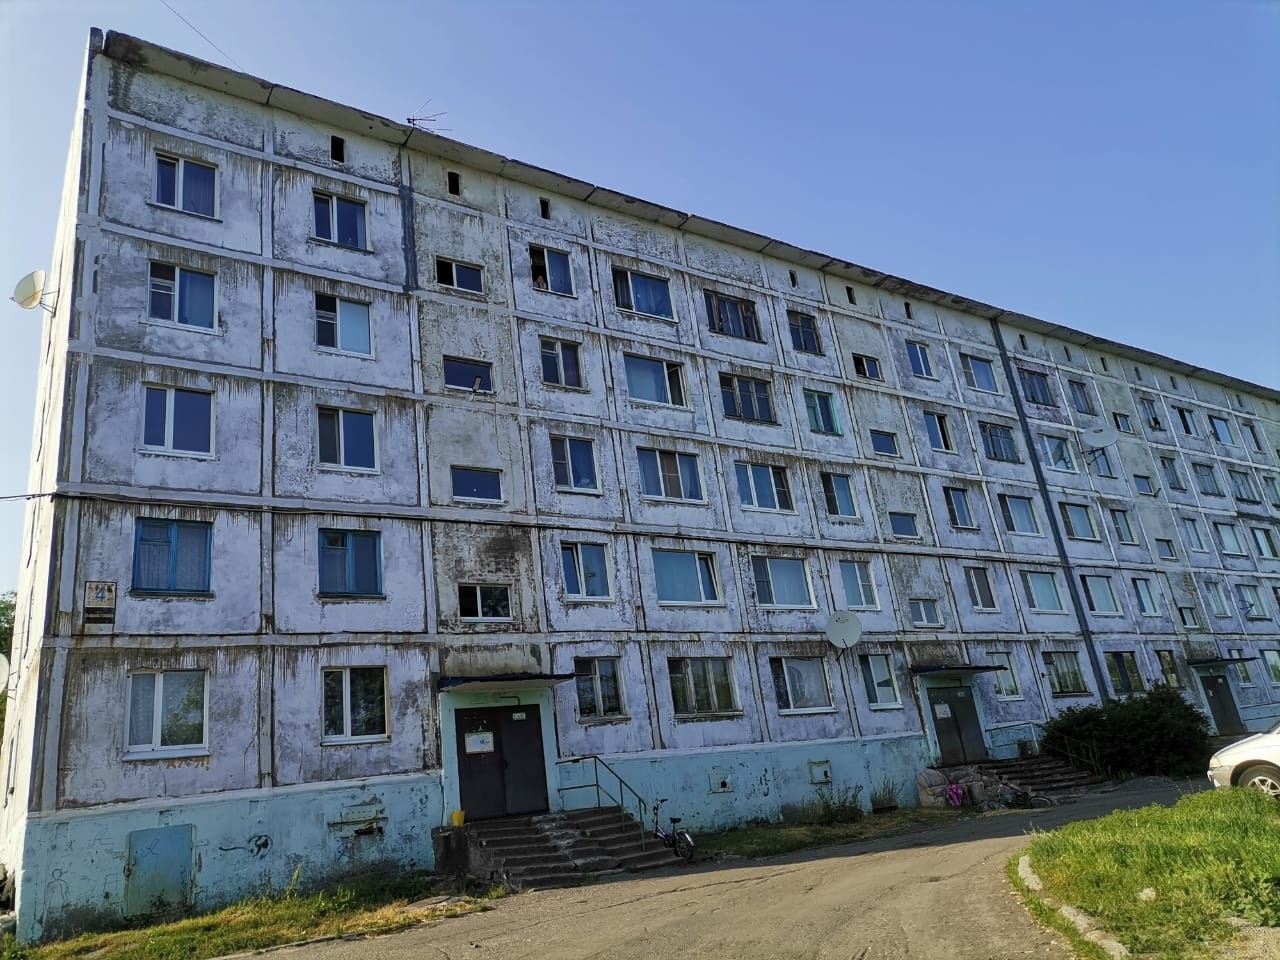 Квартира, площадью 37.80 кв.м., по адресу: Камчатский край, г. Вилючинск, ул. Владивостокская, д. 4,